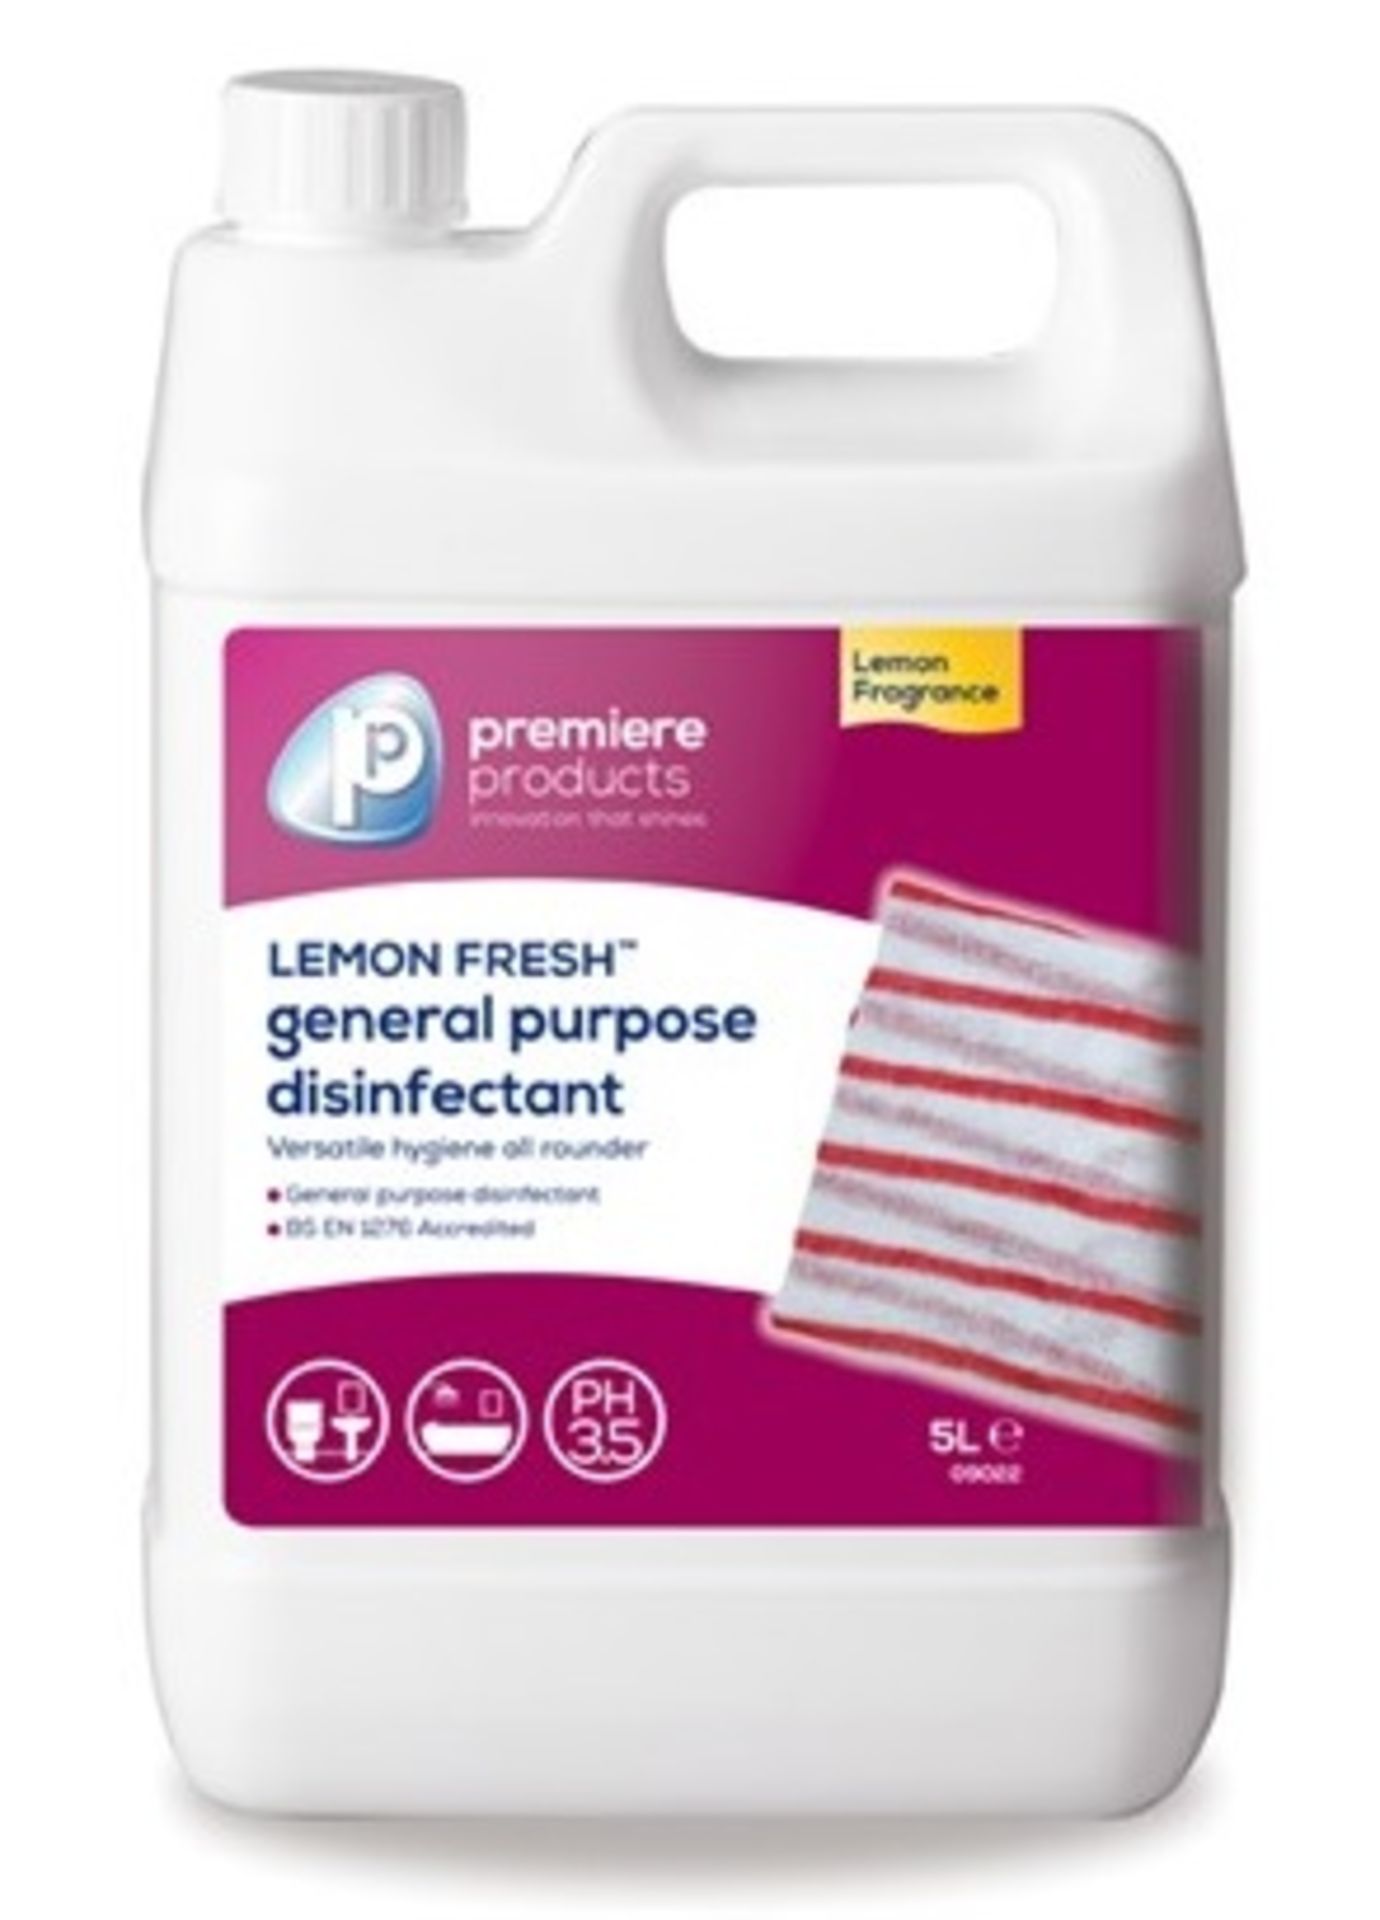 10 x Premiere 5 Litre Lemon Fresh Citrus Fragranced Anti-Bacterial Disinfectant - Premiere